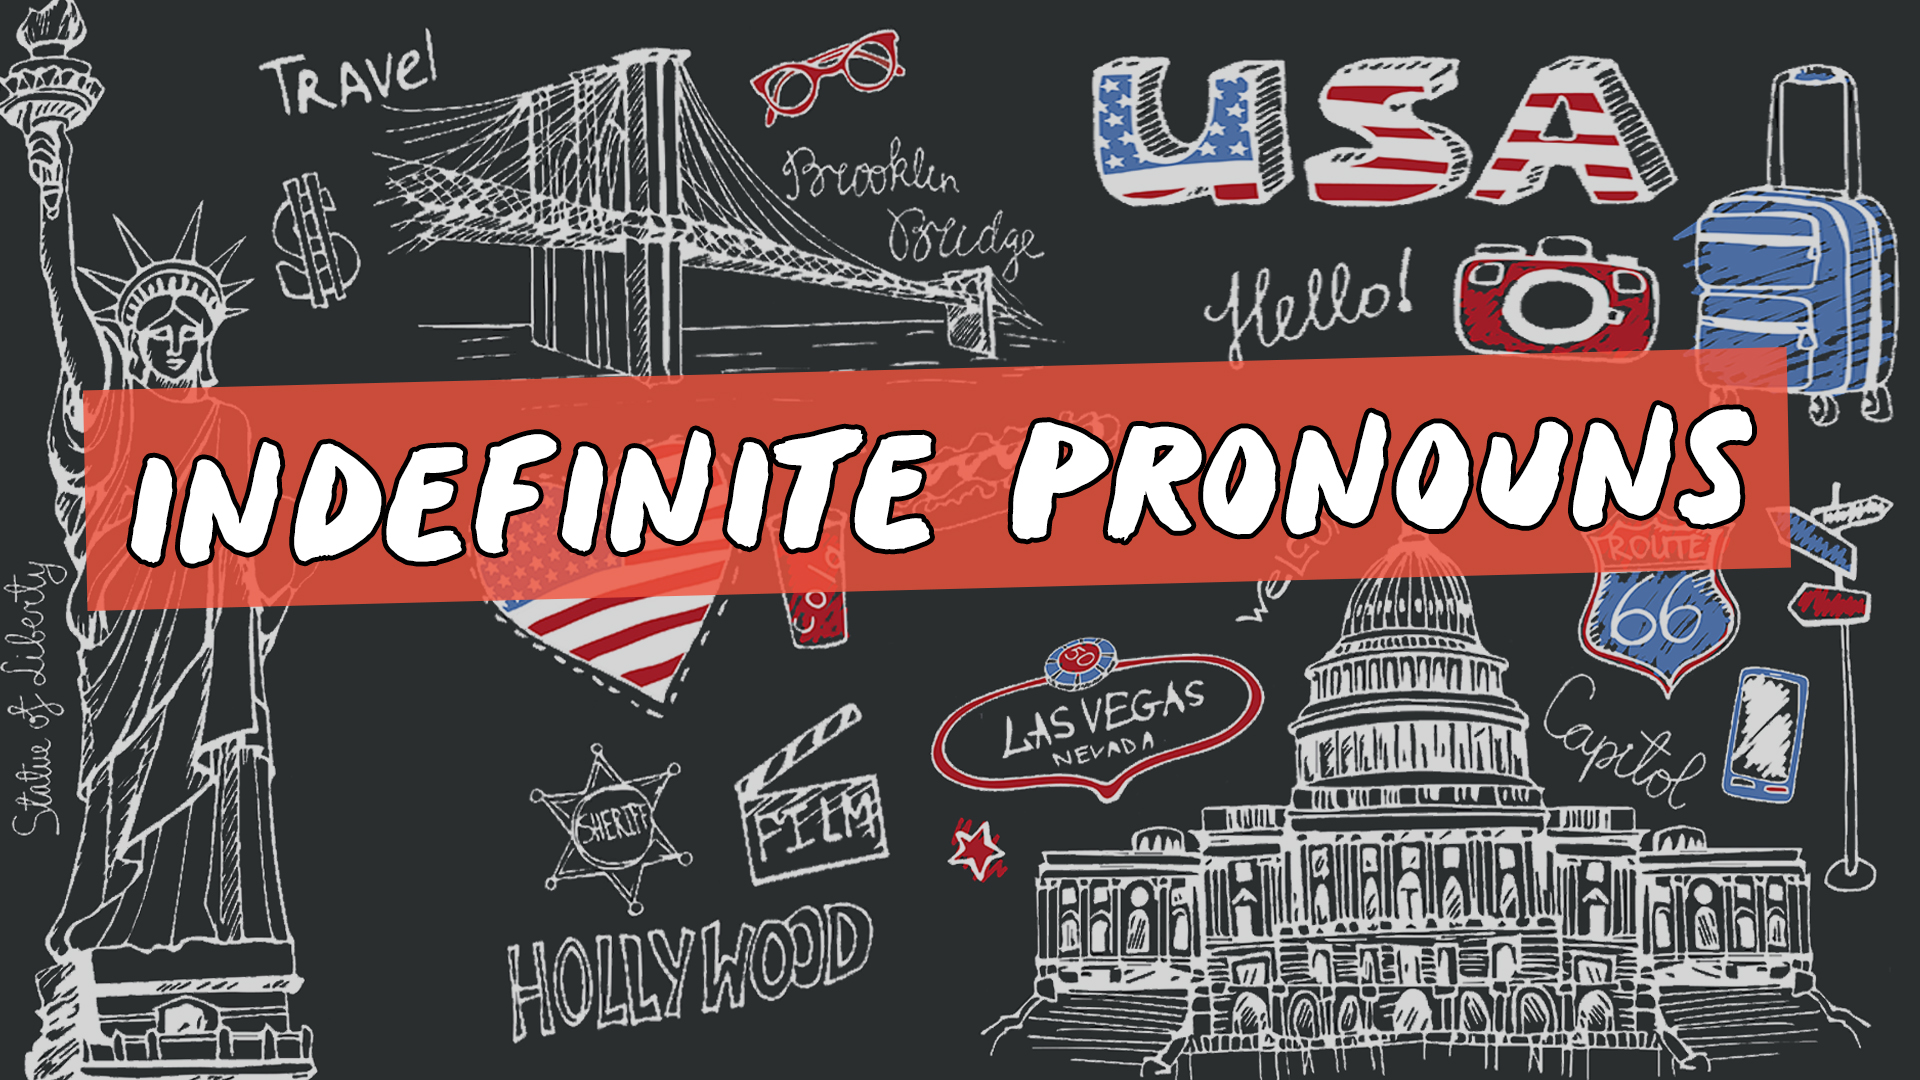 Escrito"Indefinite Pronouns" sobre representação de vários elementos da cultura do inglês americano.